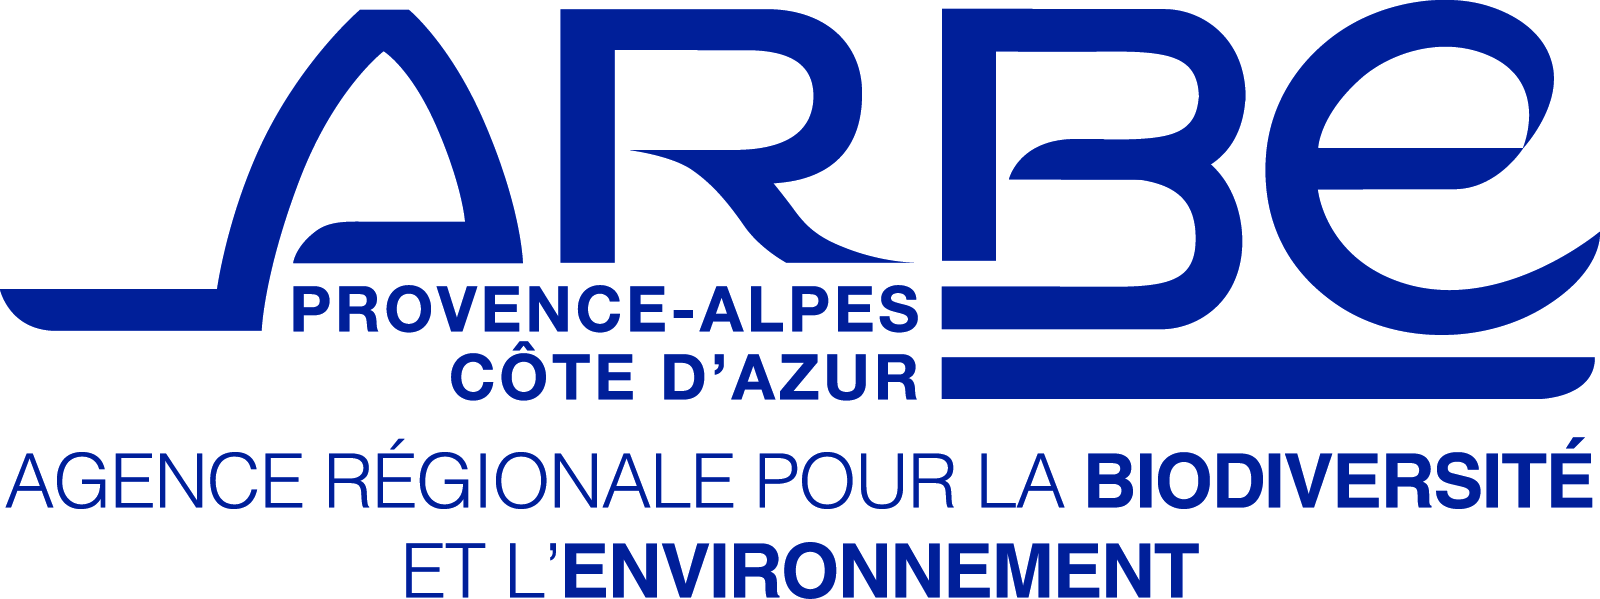 Agence Régionale pour la Biodiversité et l’Environnement (ARBE)